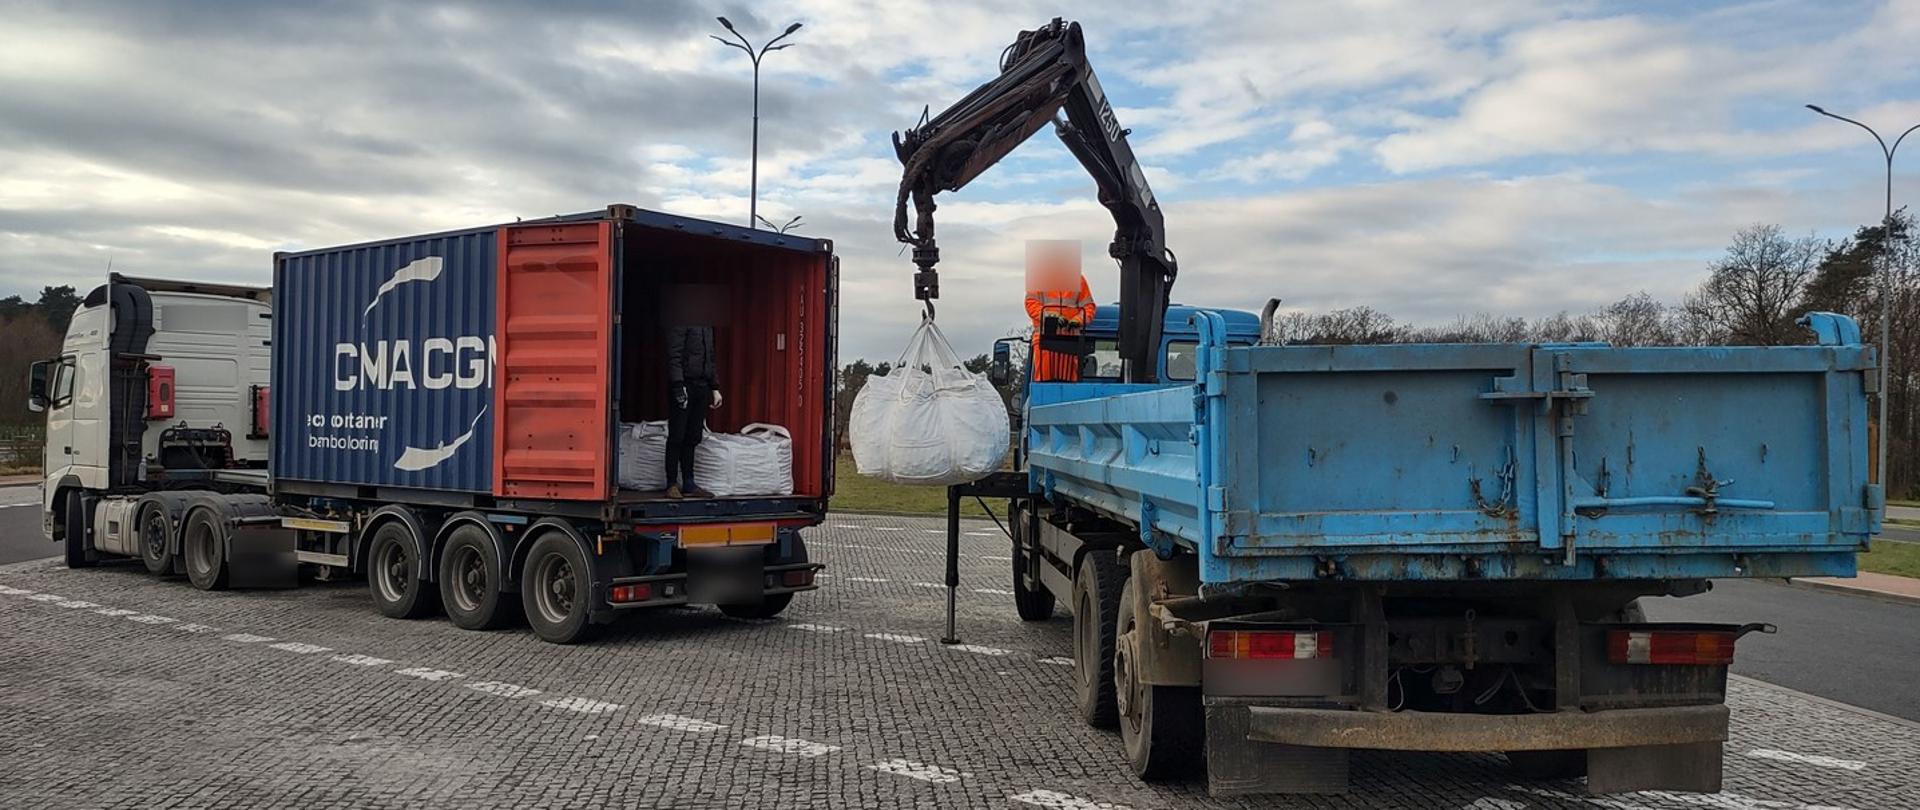 Zbyt ciężki ładunek stalowych kul w big bagach musiał być przeładowany na podstawiony pojazd